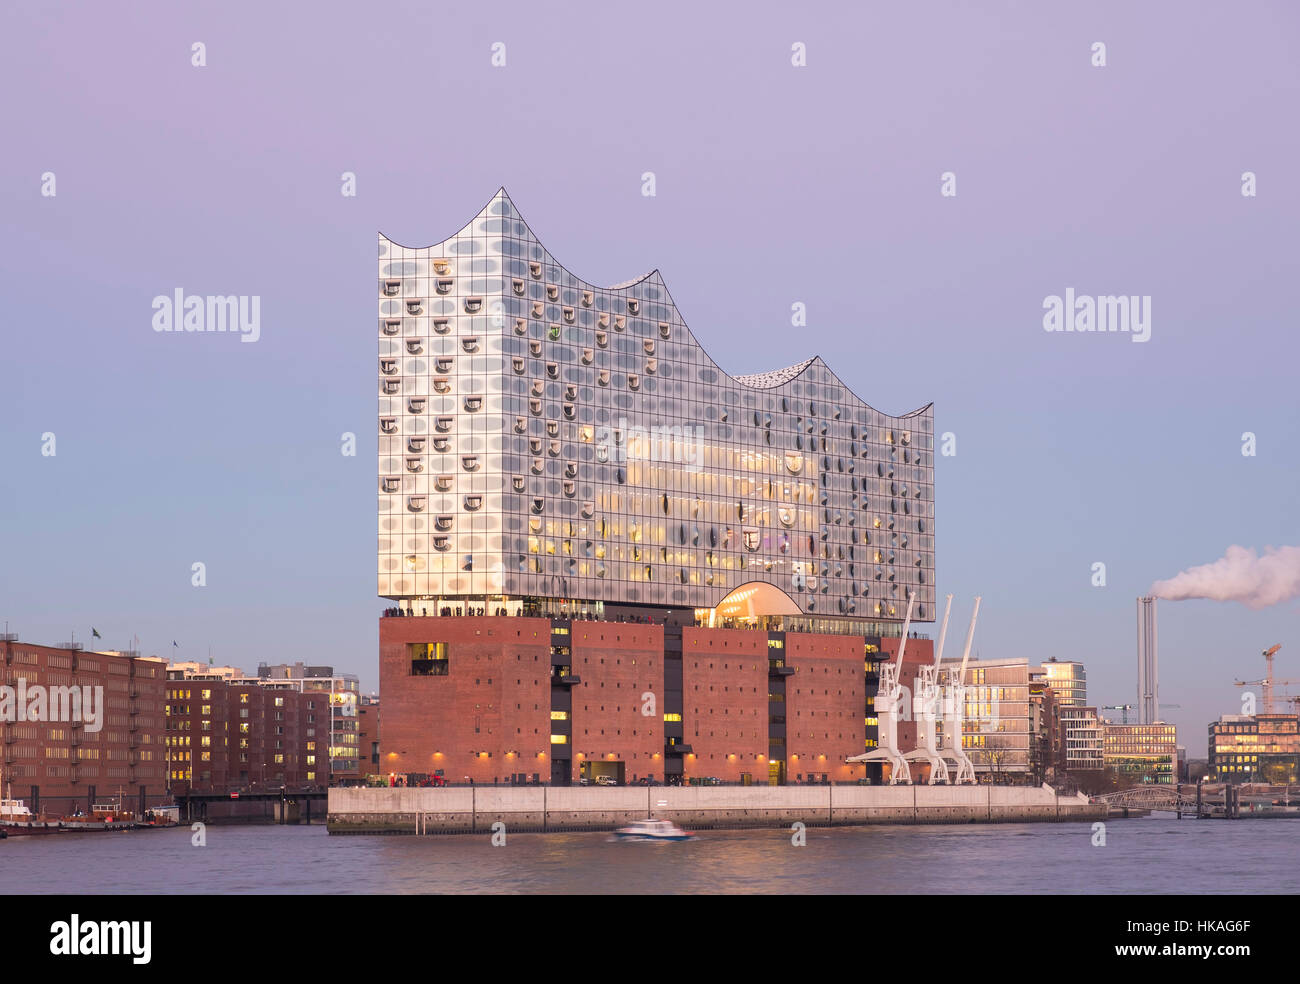 Elbphilharmonie, Hambourg, Allemagne ; voir de nouveaux Elbphilharmonie opéra de Hambourg, Allemagne. Banque D'Images